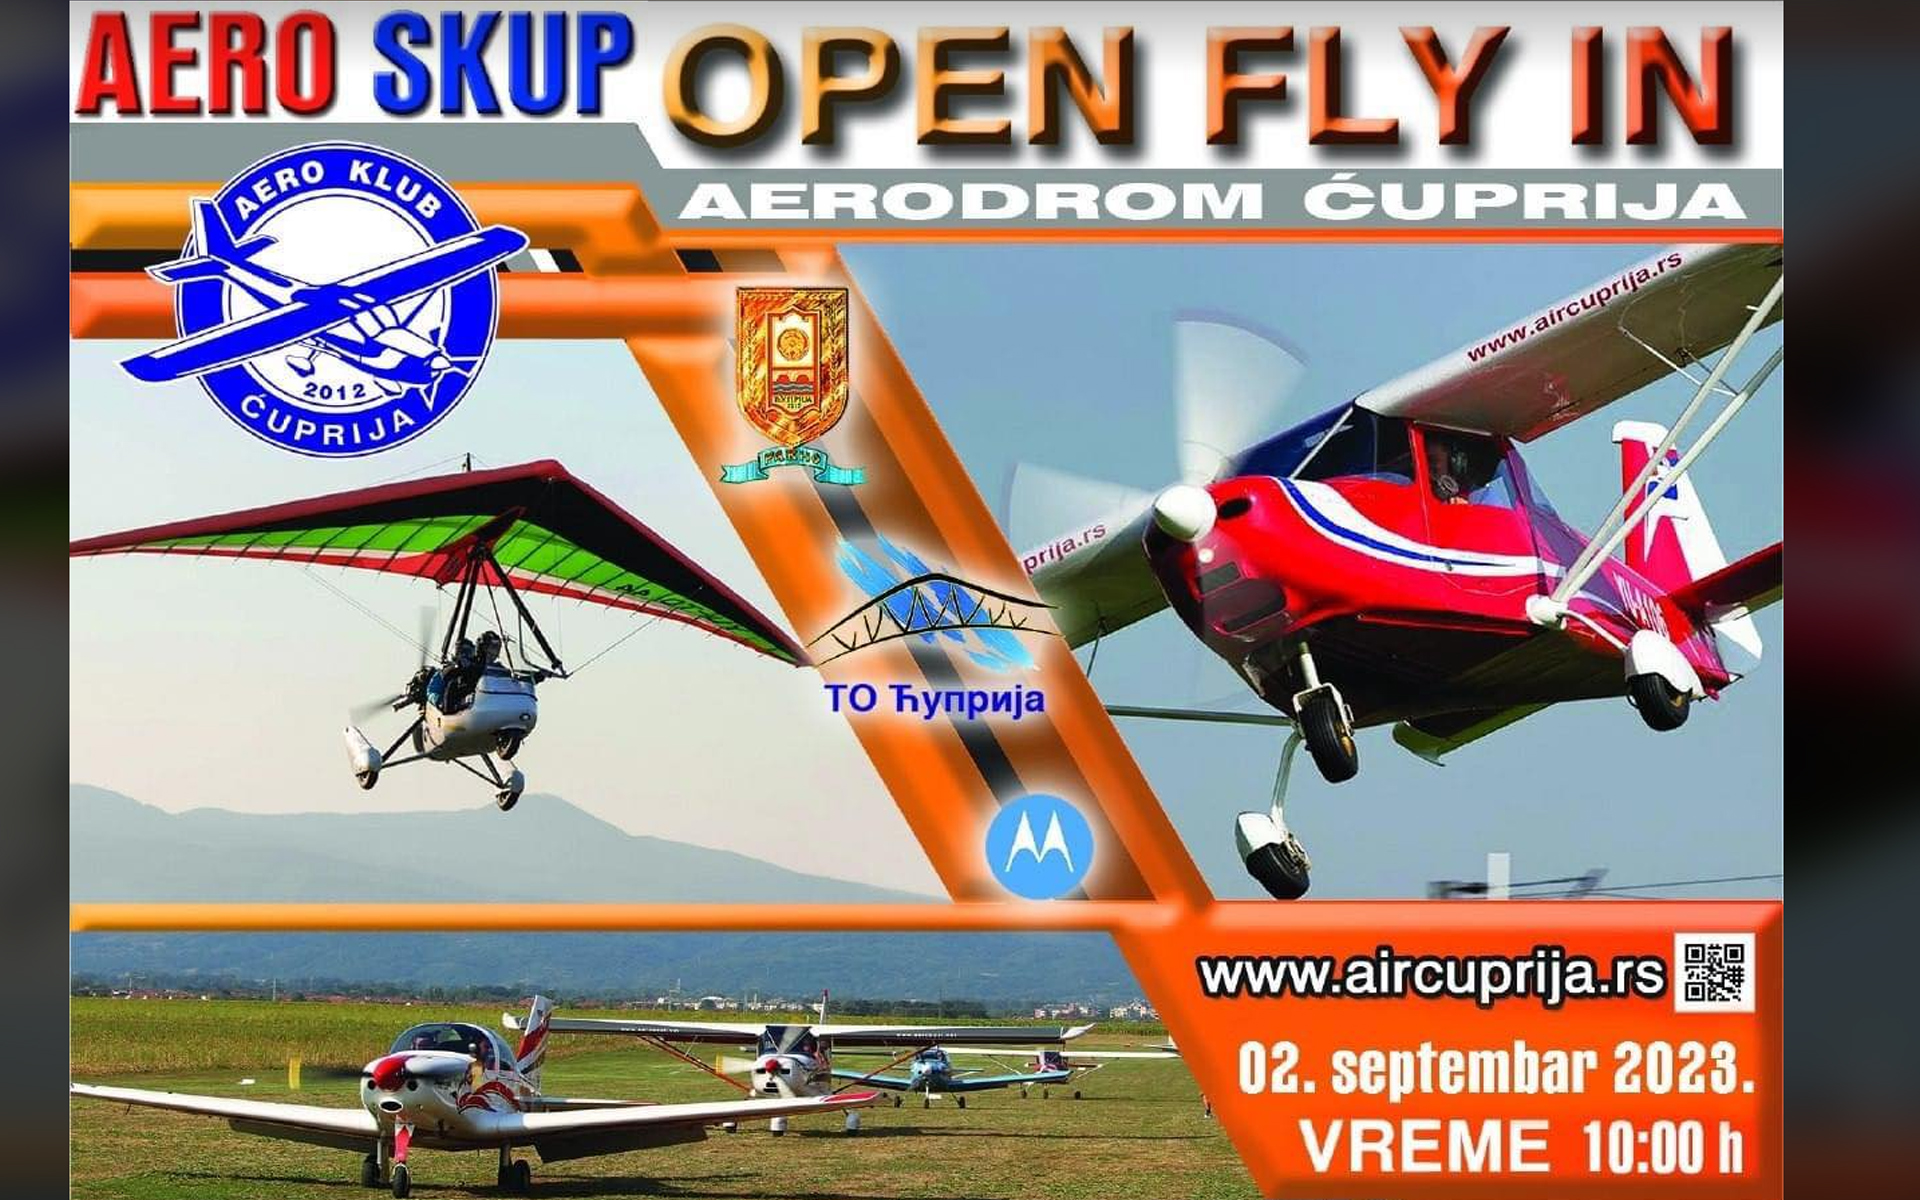 Početkom septembra aero skup “Open fly in” u Ćupriji